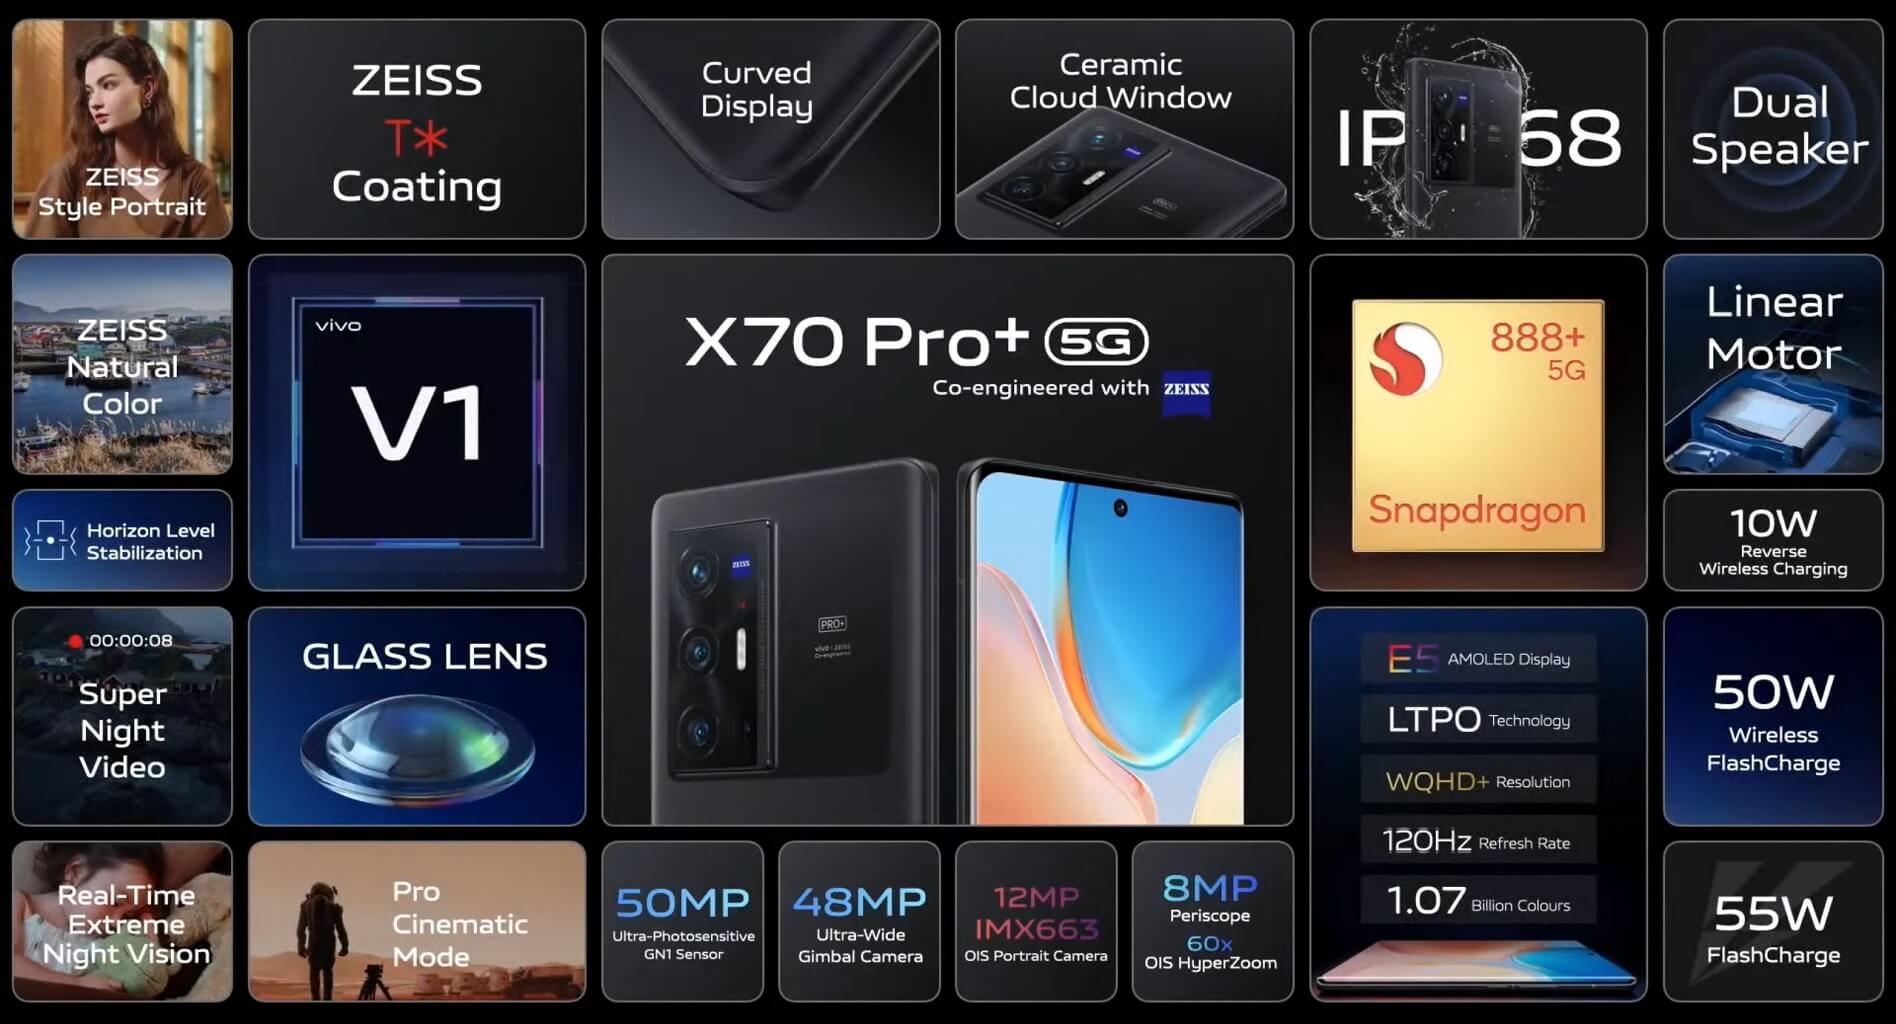 Vivo X70 Pro plus features